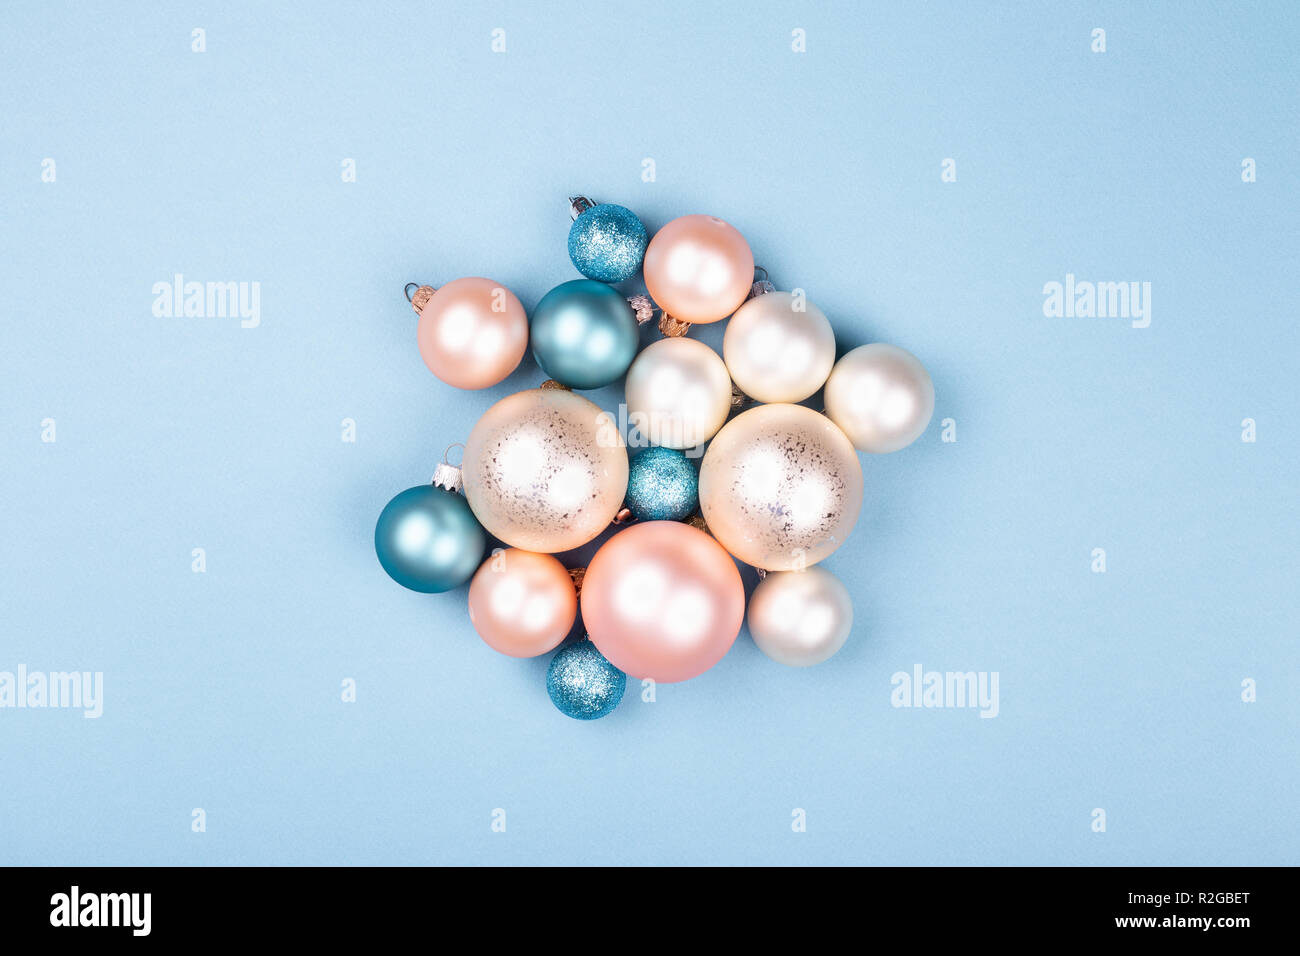 Composition de noël faites de boules de Noël sur fond bleu. Nouveau concept de l'année minimum. Banque D'Images